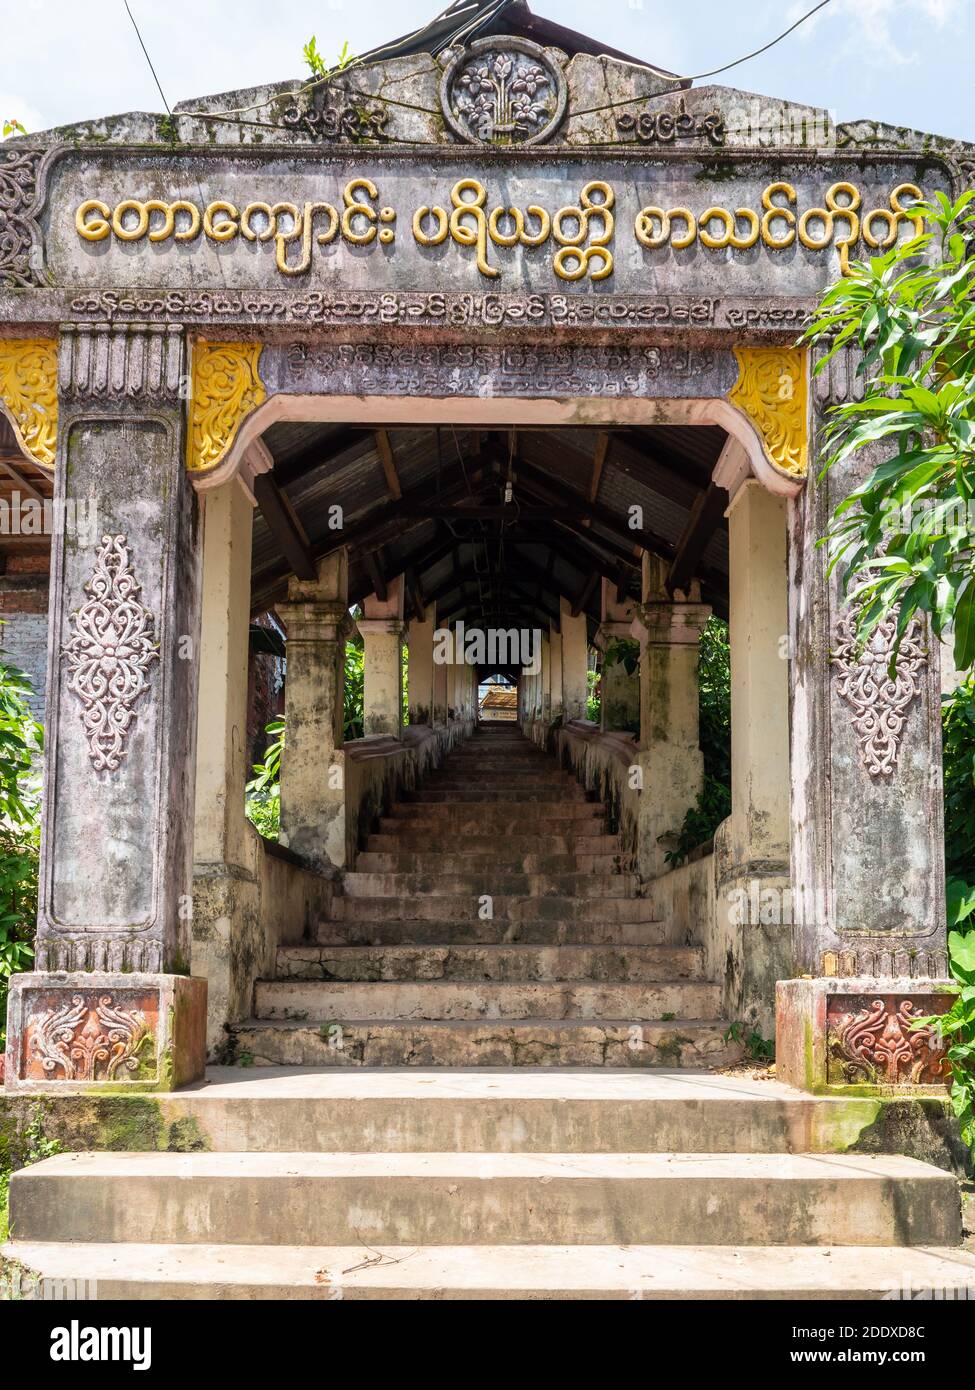 Entrée au monastère de Taw Kyaung à Myeik, dans la région de Tanintharyi au Myanmar. Banque D'Images